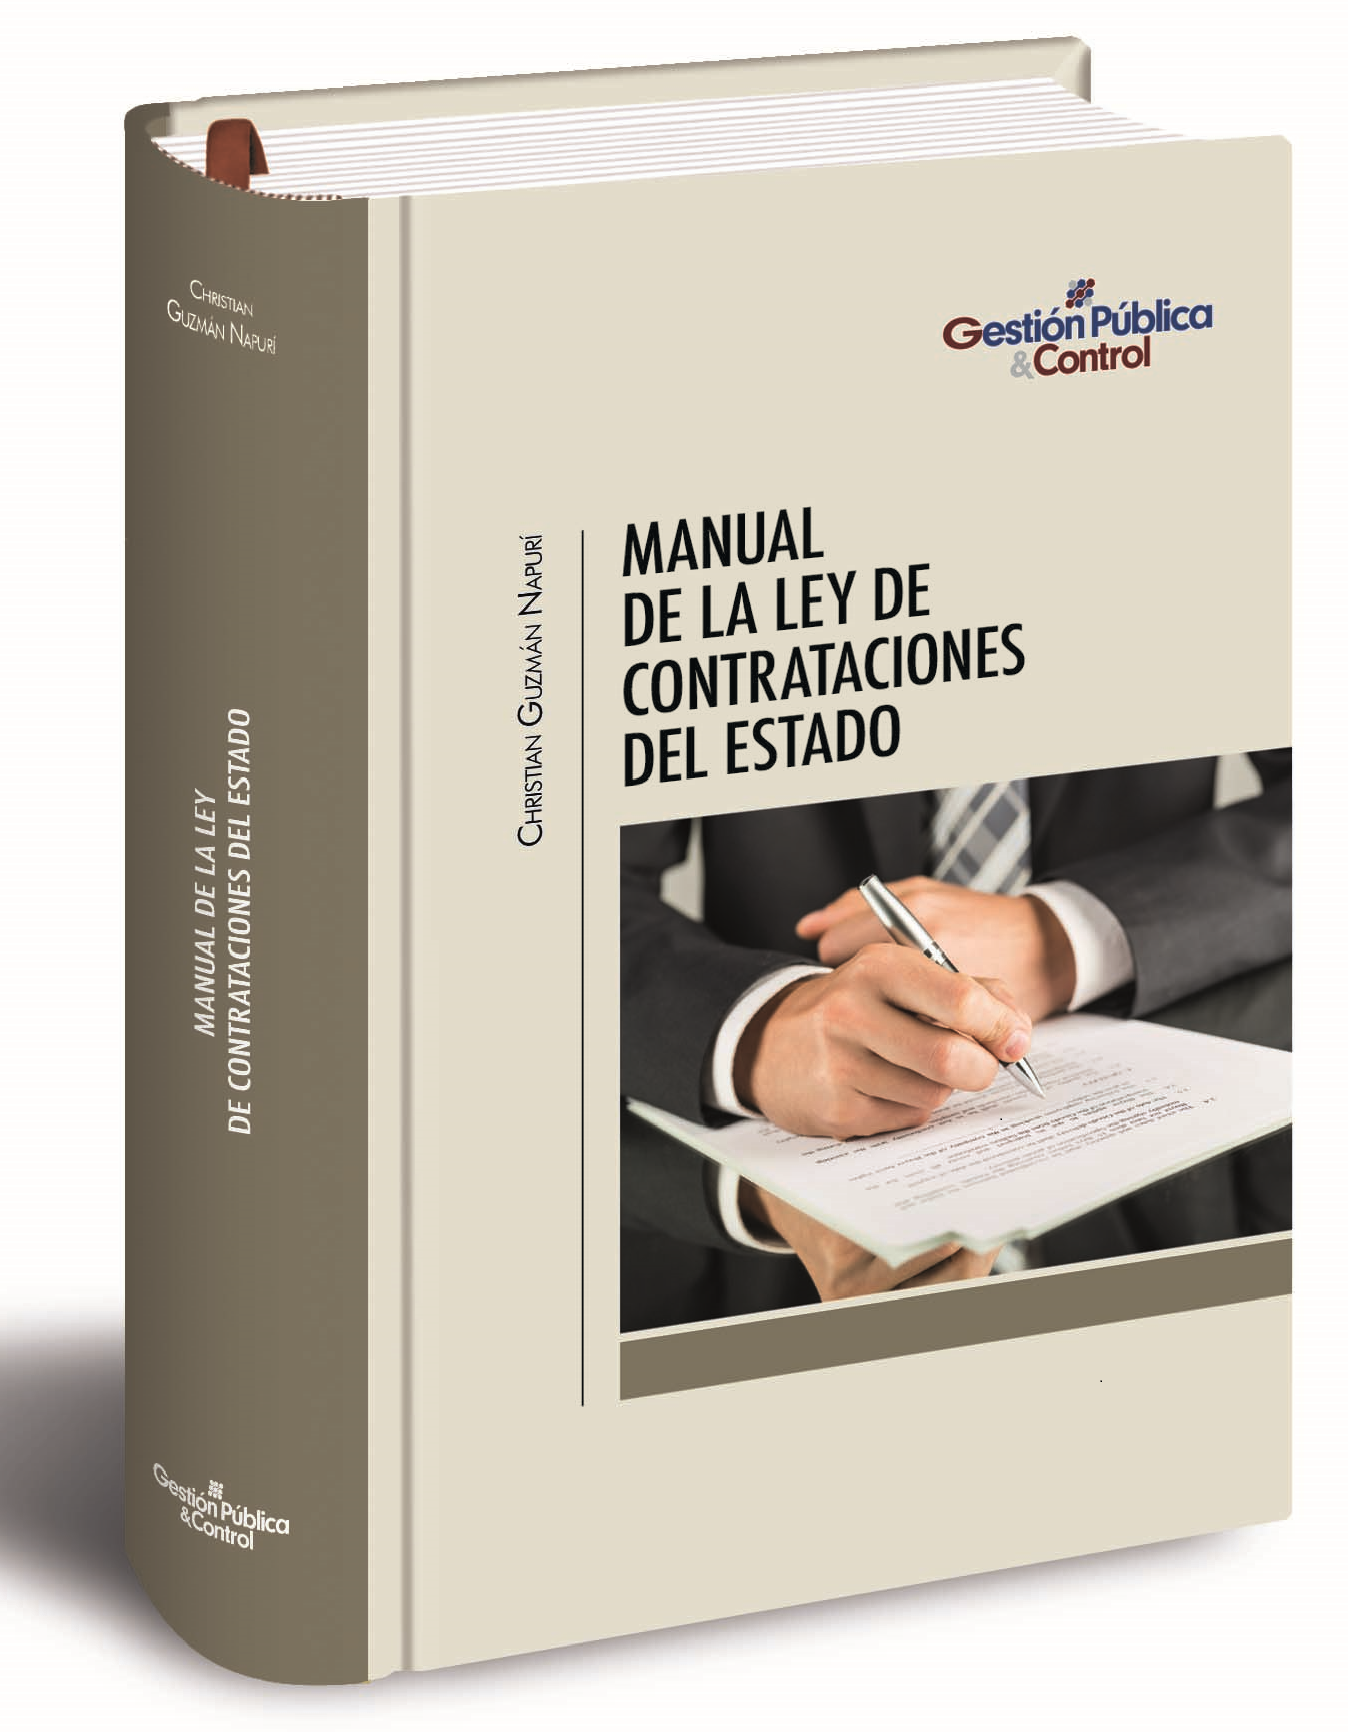 Manual De La Ley De Contrataciones Del Estado Segunda Edicion La Cosa Publica